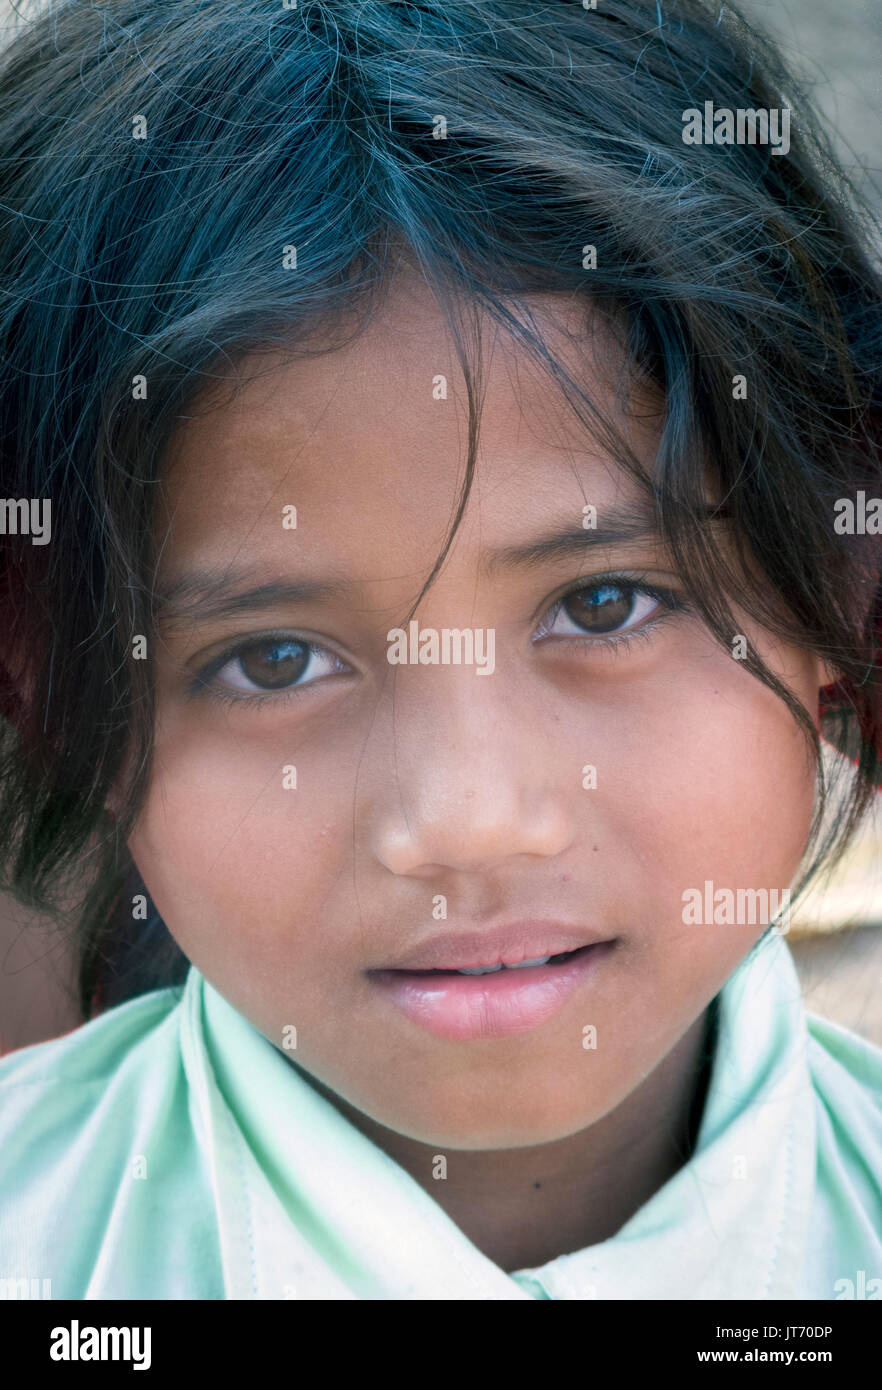 Jeune fille, sérieux, 10-12 ans, au Cambodge Banque D'Images